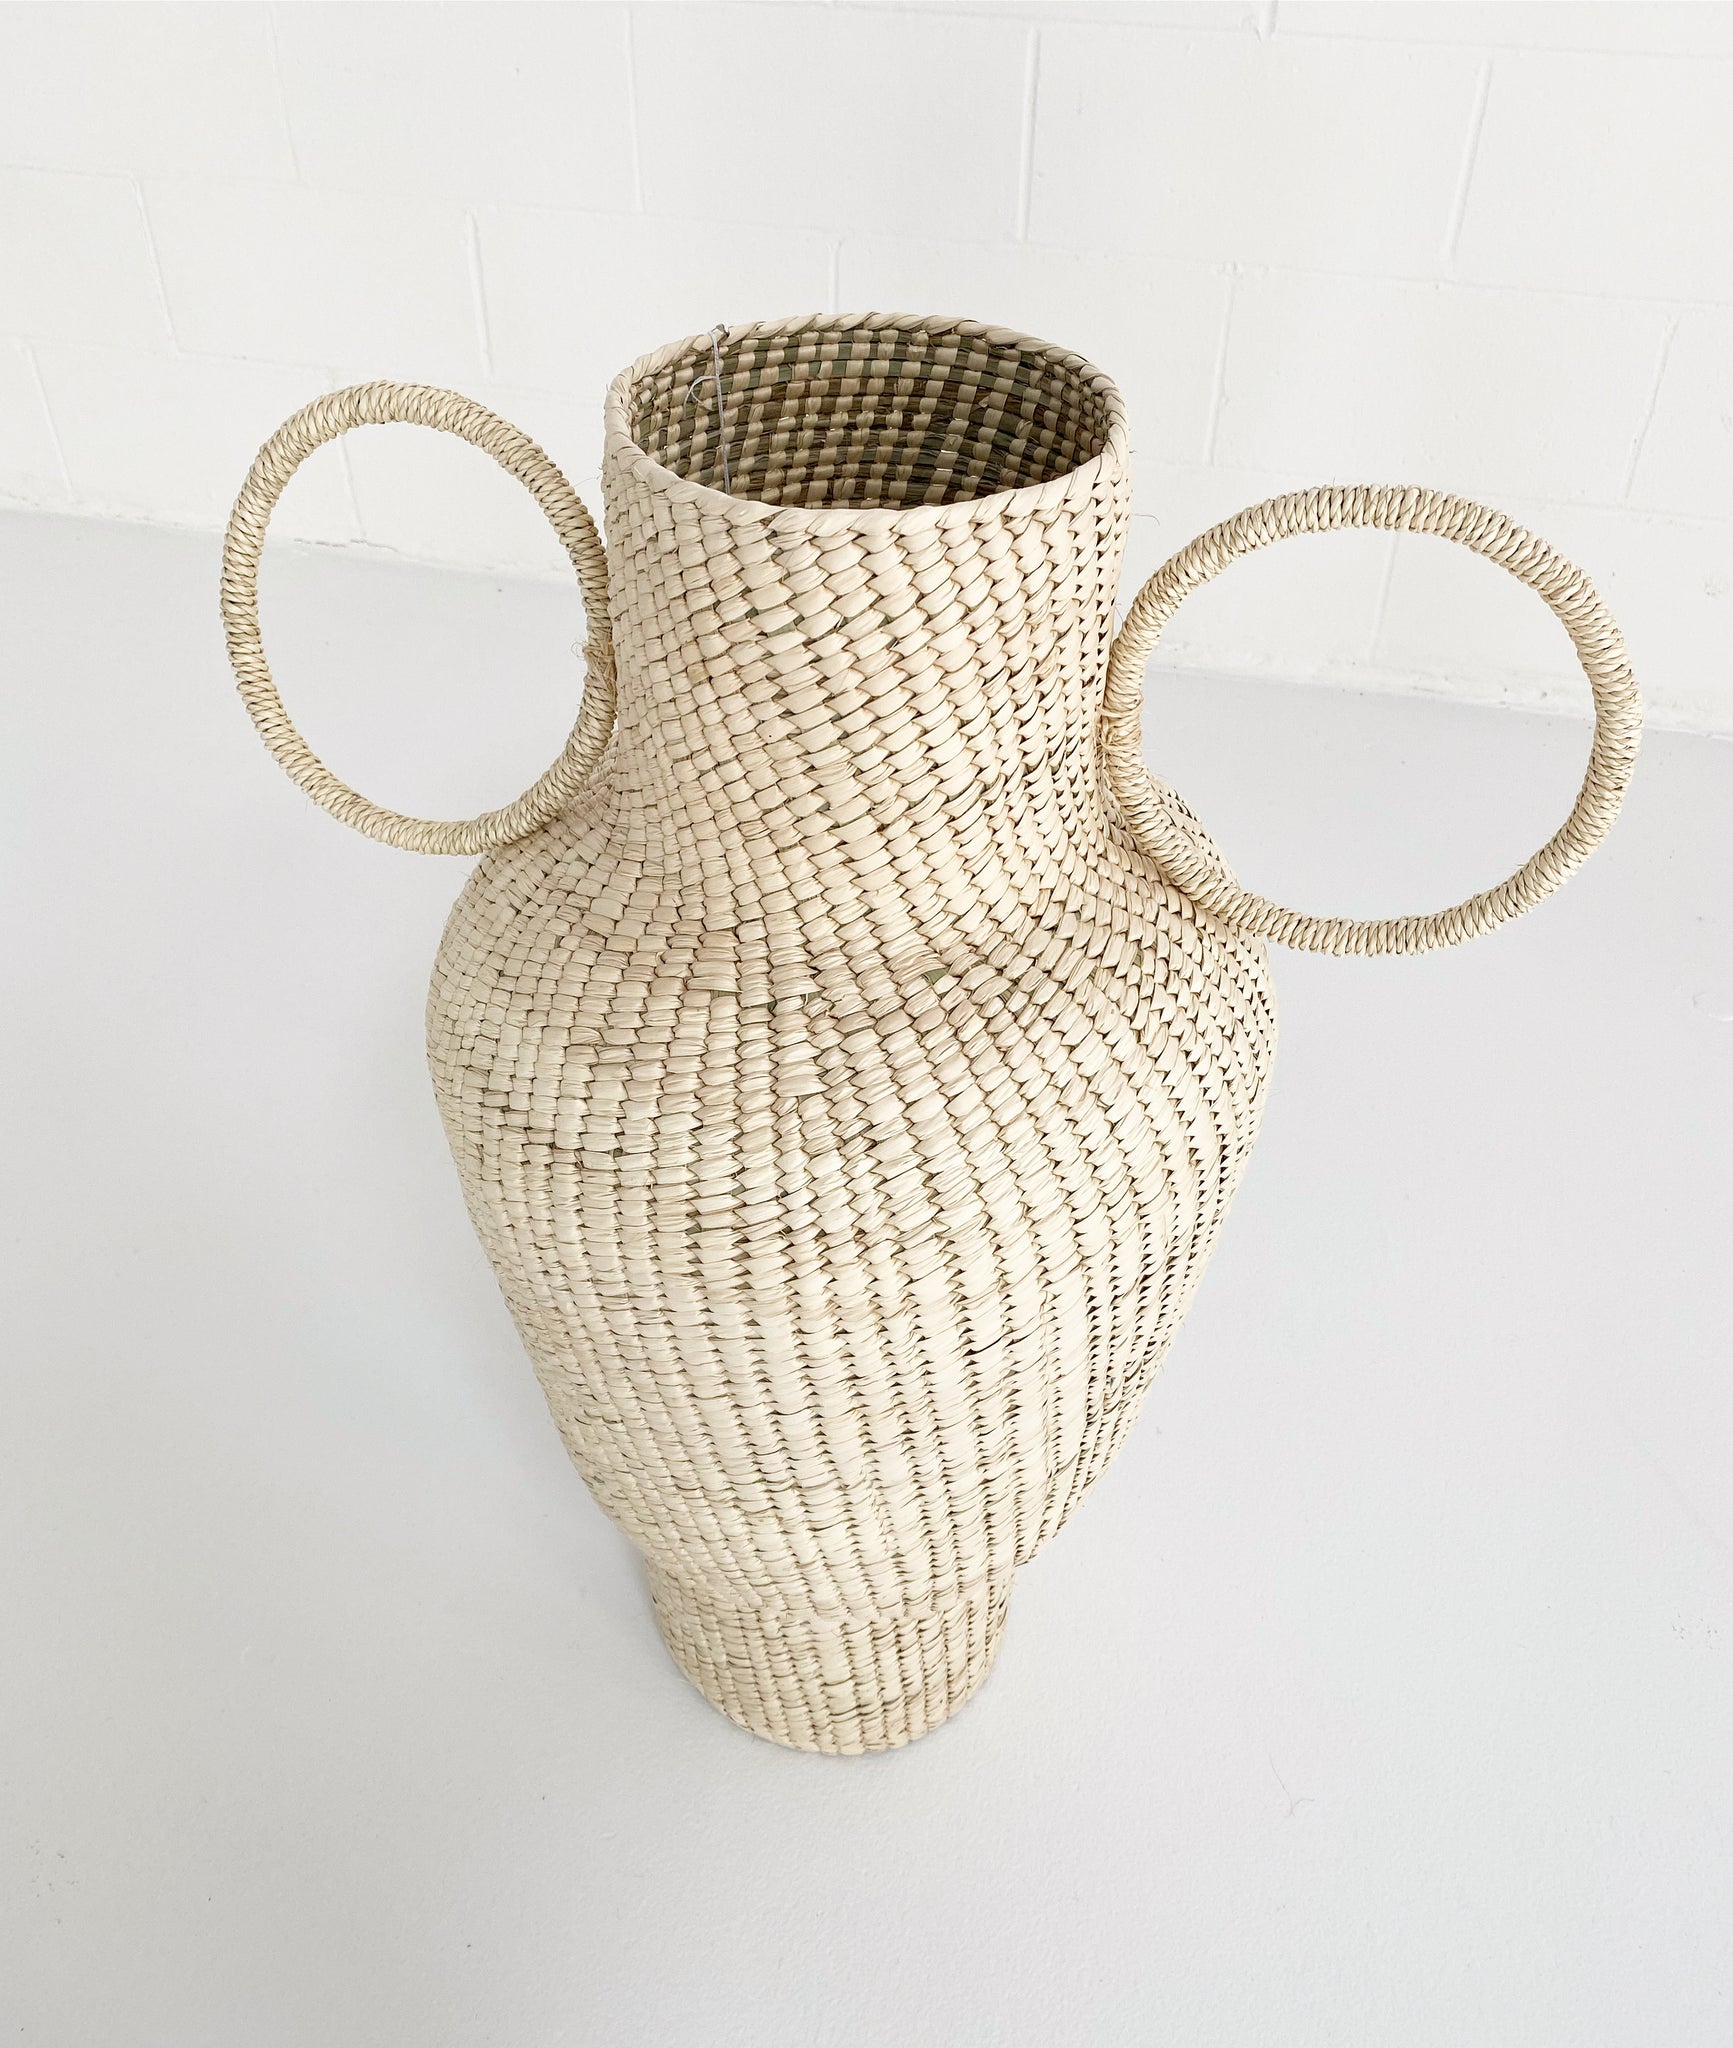 Union Vase 03, Palm Sculpture